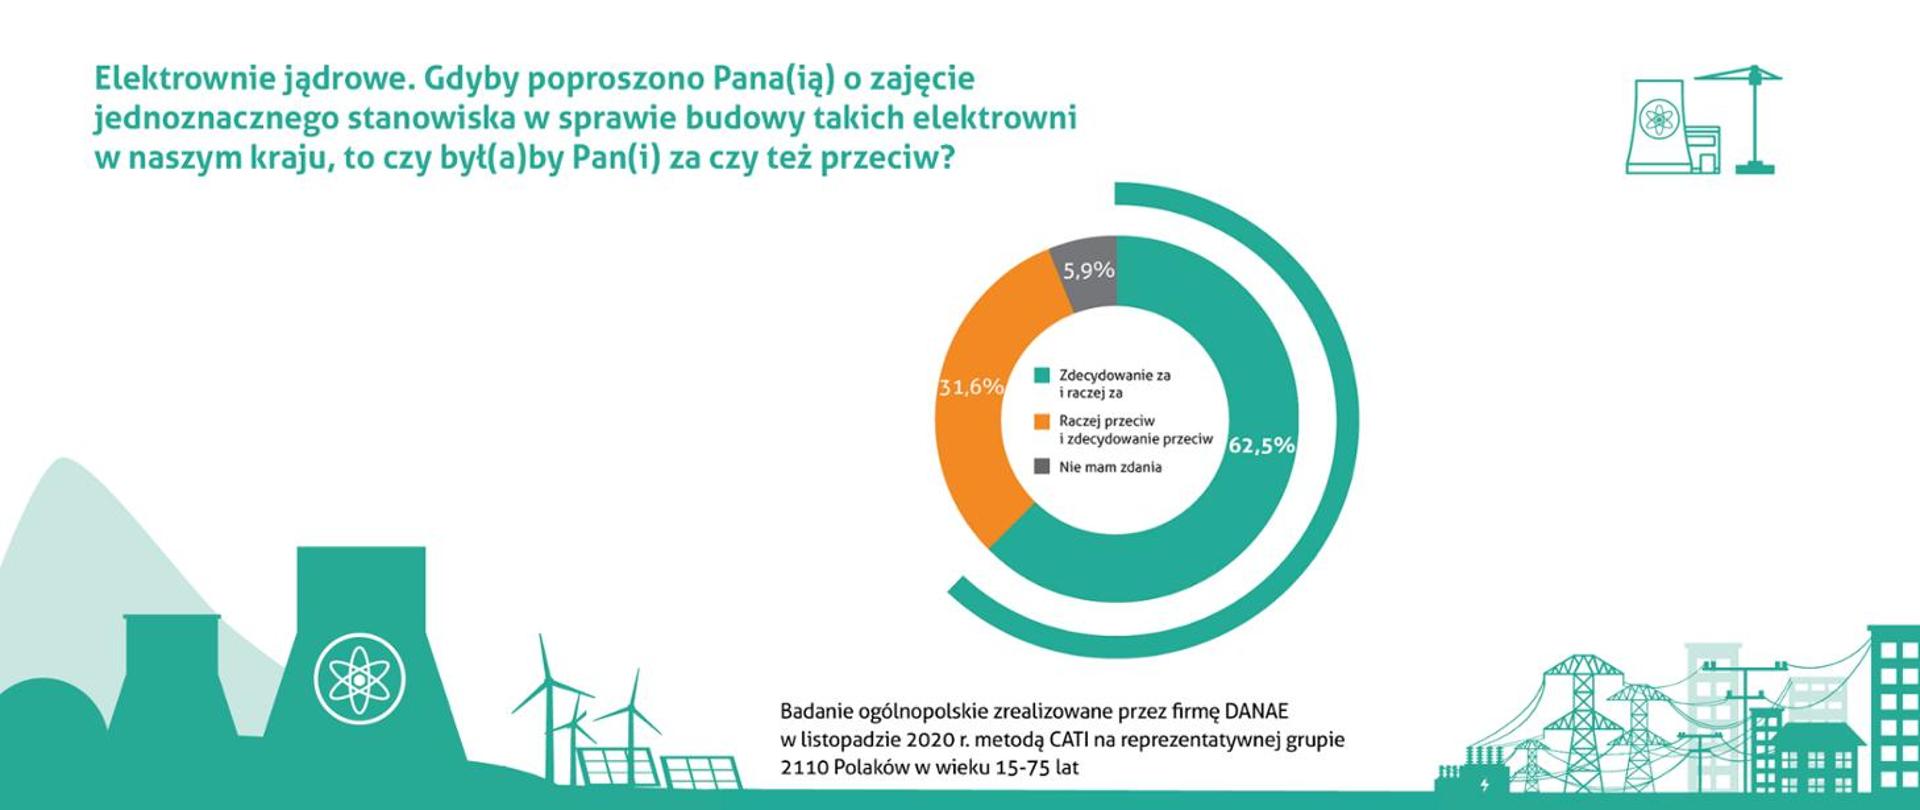 Poparcie dla budowy elektrowni jądrowych w Polsce - badanie z listopada 2020 r. 